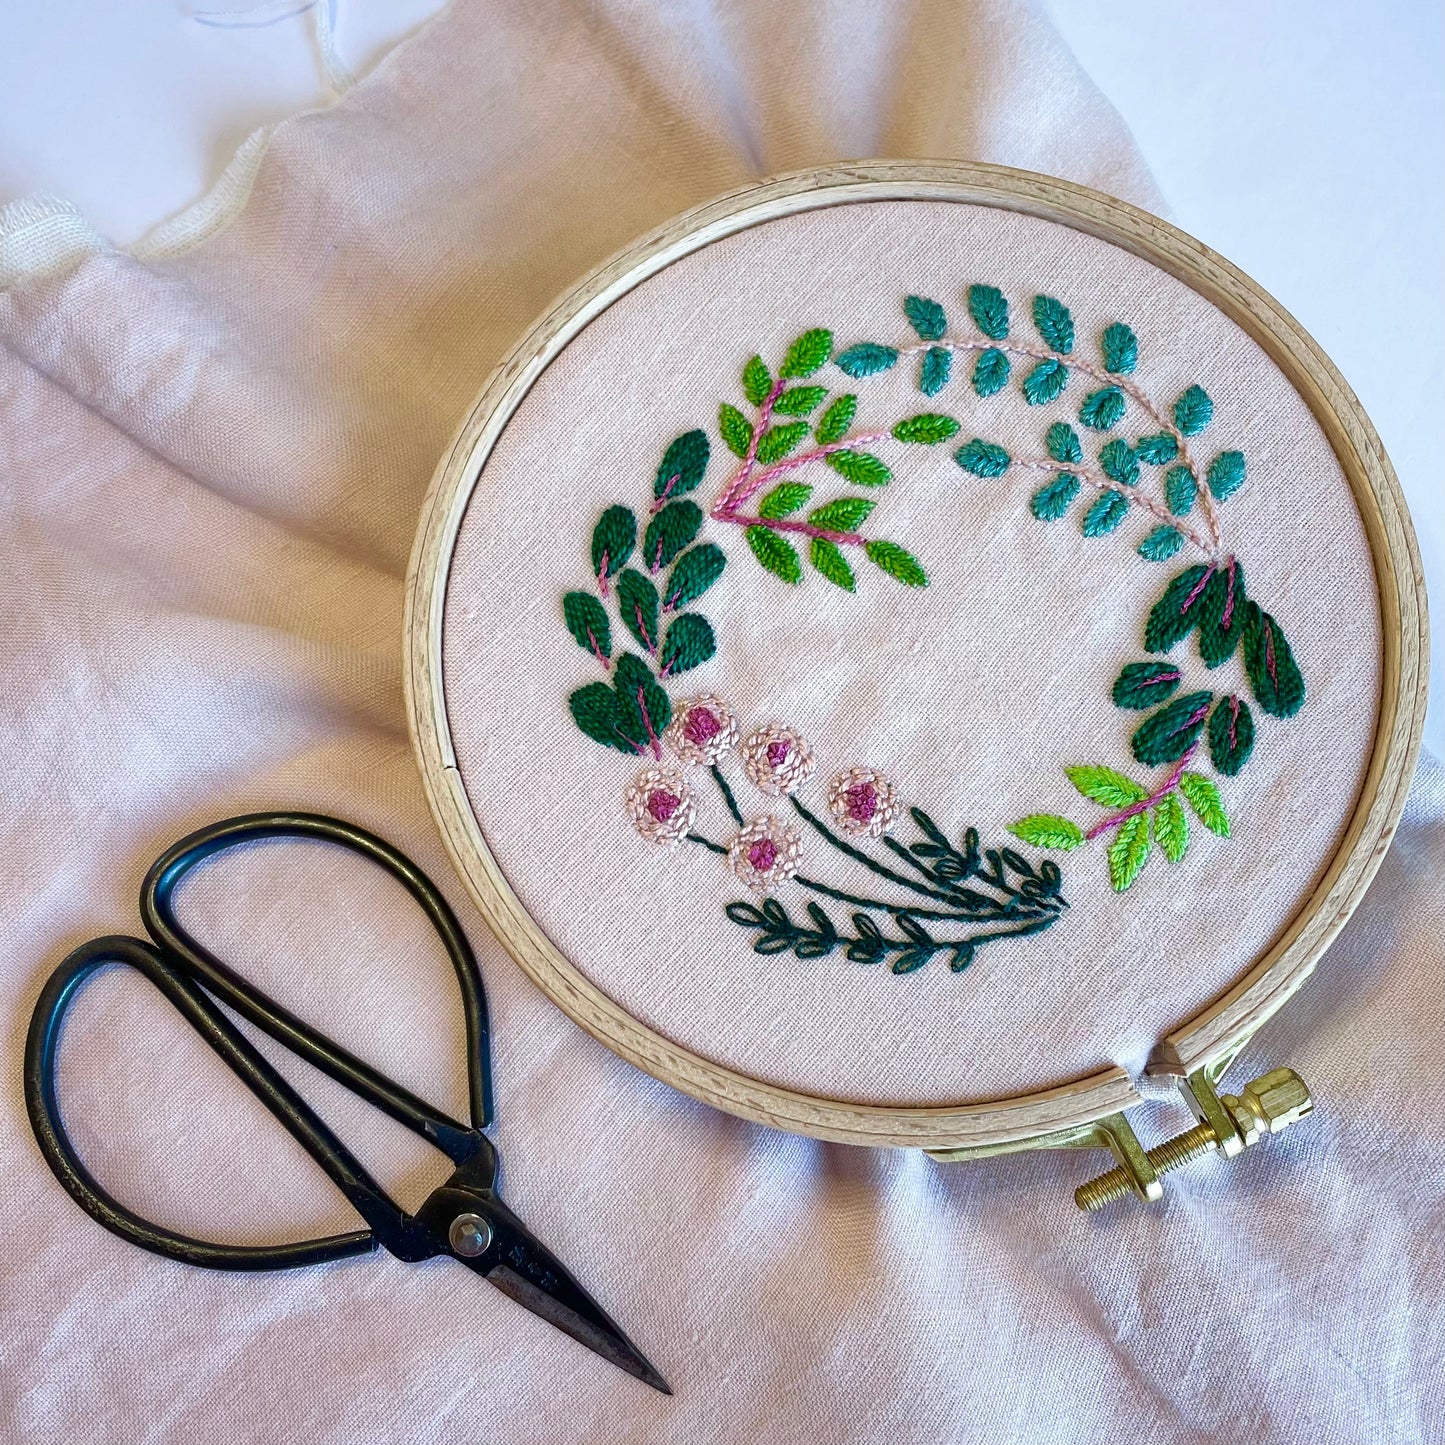 Nurge Embroidery Hoop No. 2 - 16mm